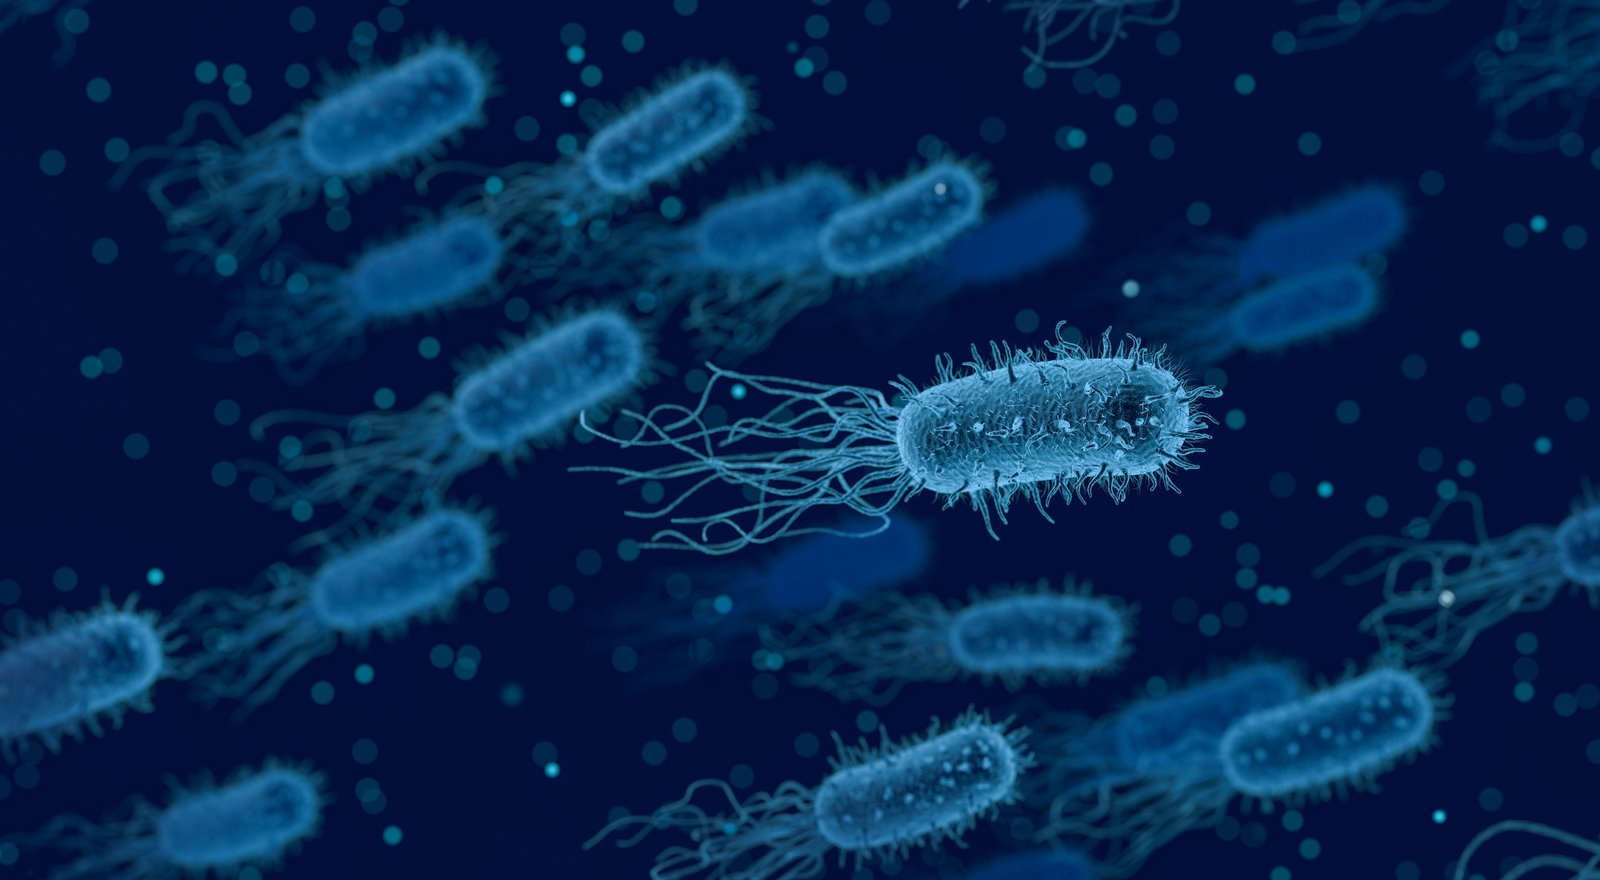 Bactria jako symbol chorób wenerycznych przenoszonych drogą płciową